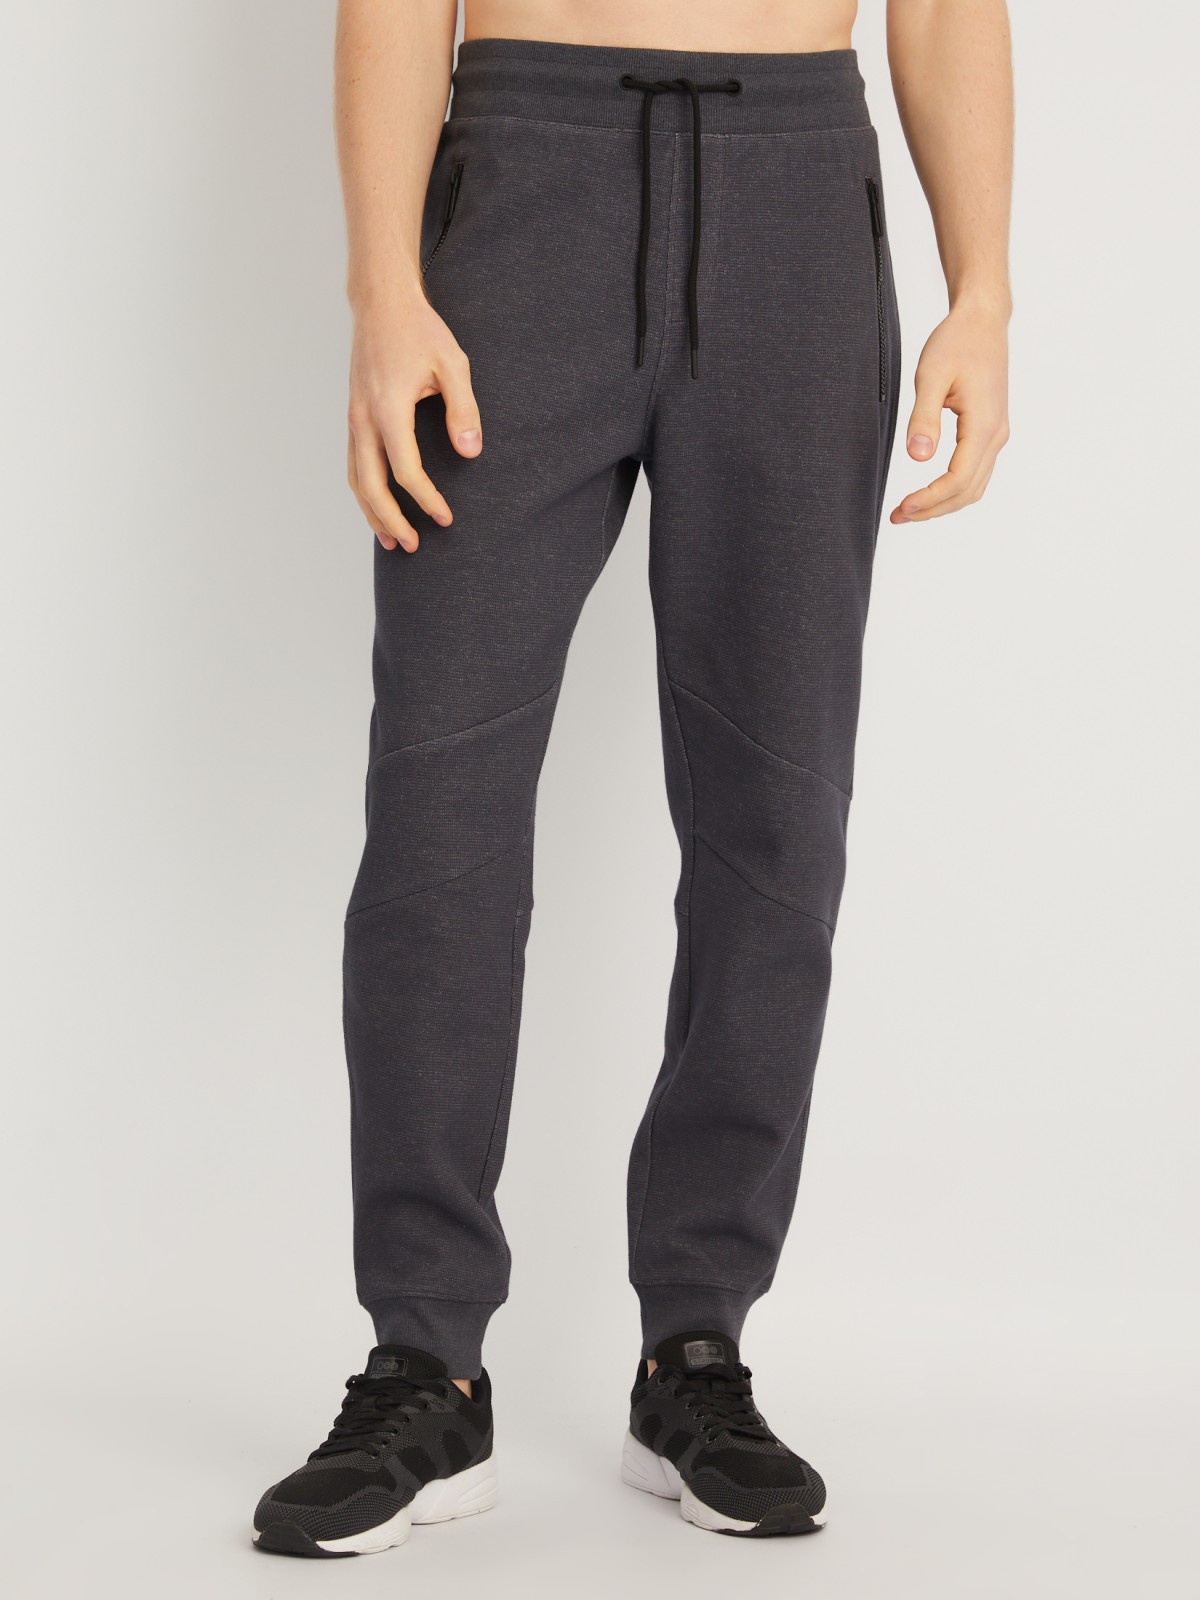 Трикотажные брюки-джоггеры в спортивном стиле zolla 014127679013, цвет темно-серый, размер S - фото 2